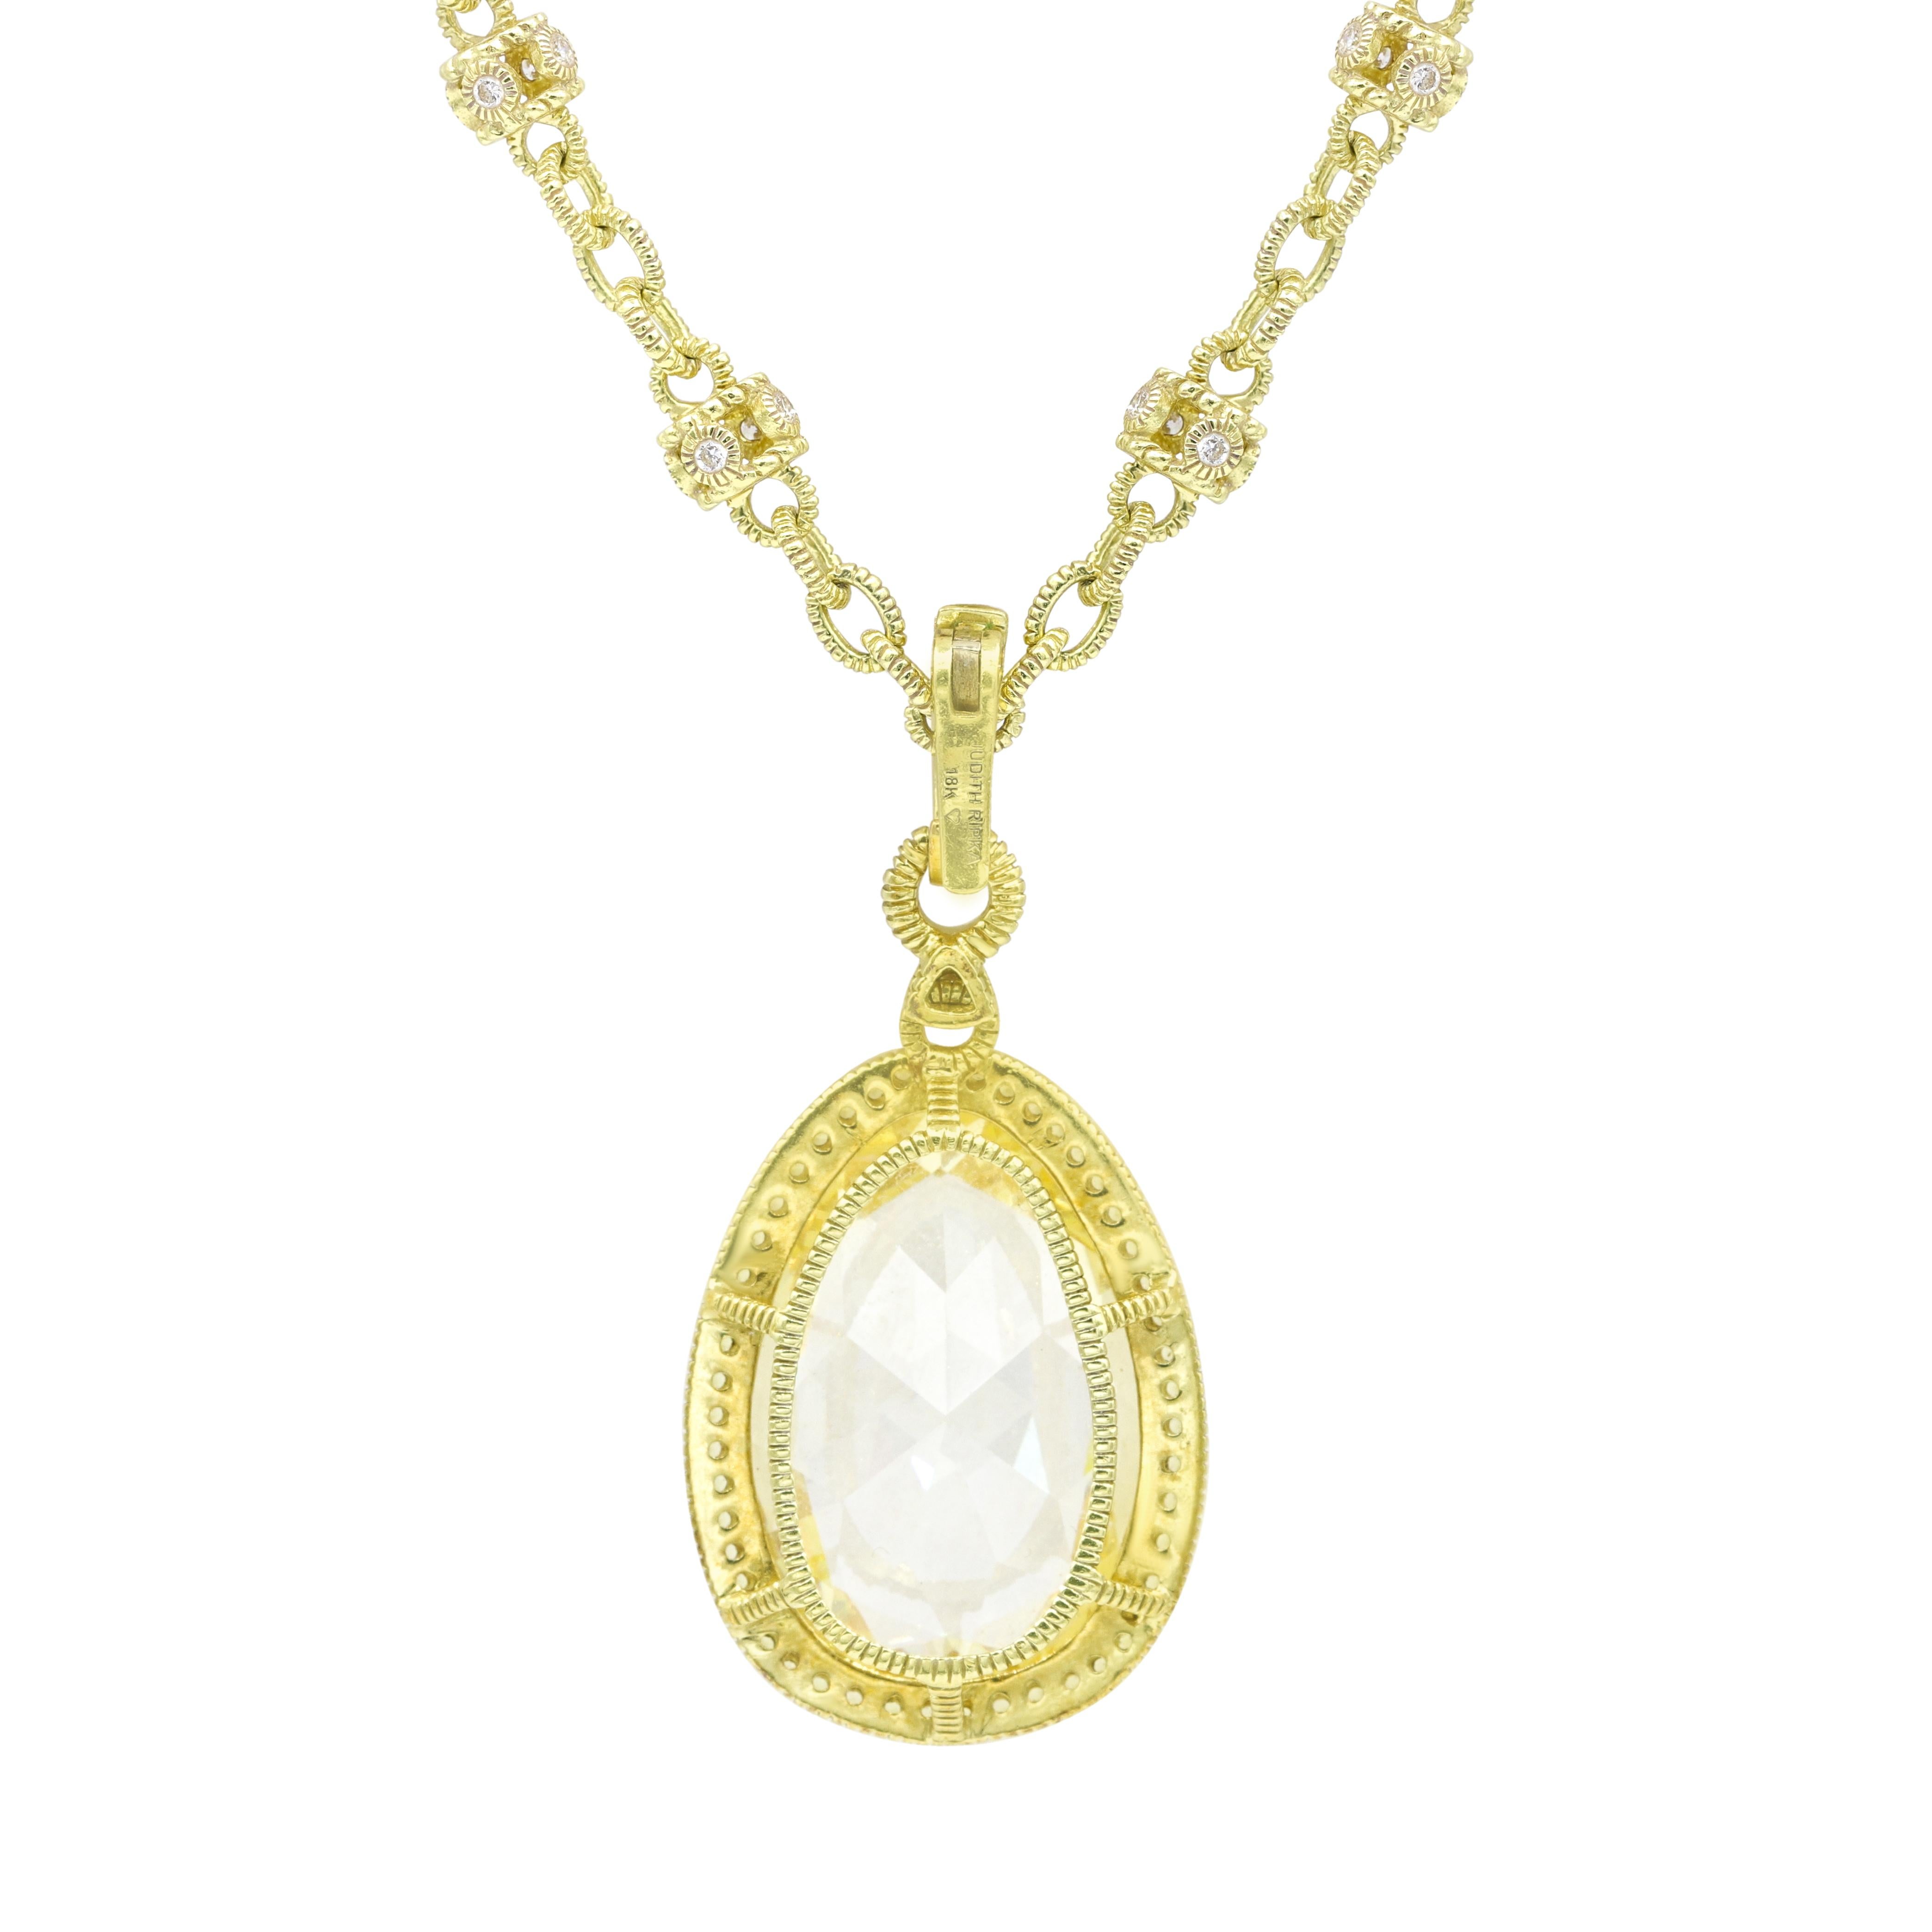 collier en or jaune 18KT avec pendentif en citrine, diamant et saphir jaune, comprenant 30,00 ct de citrine ovale, 2,30 ct de saphir jaune sur un halo et 1,10 ct de diamants.